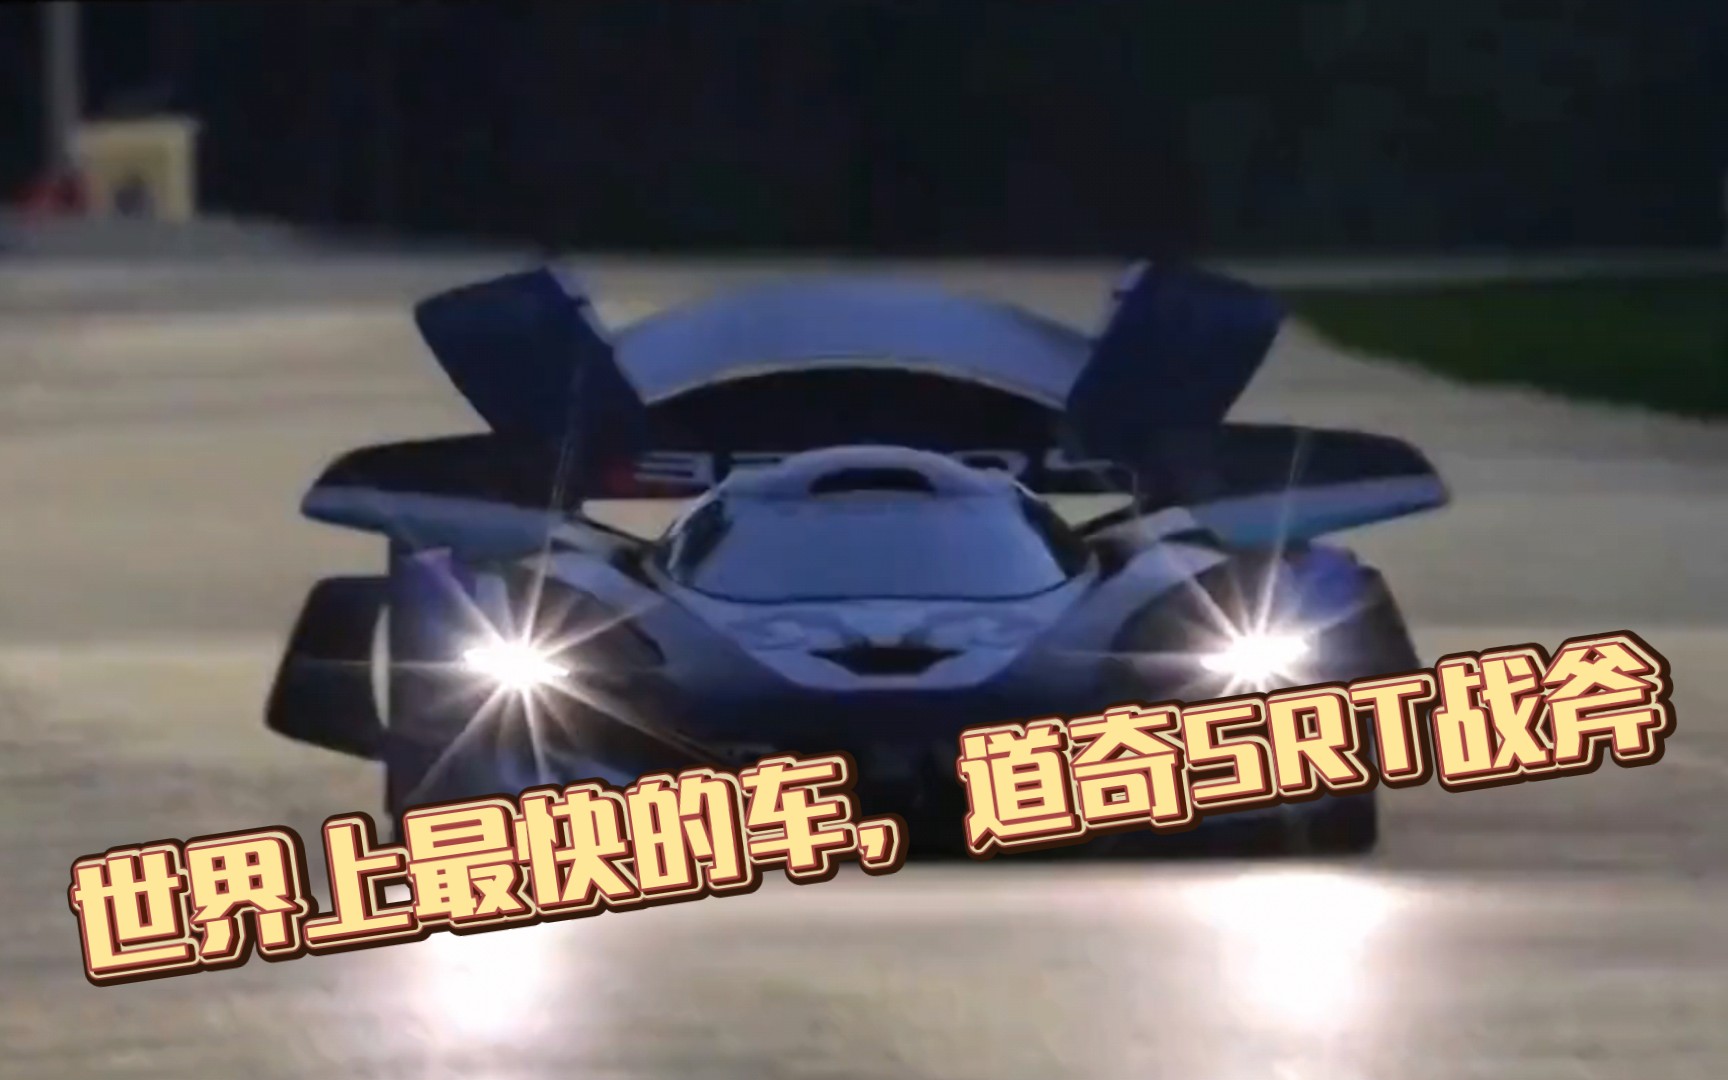 世界上最快的车,道奇srt战斧的魅力与实力展示!